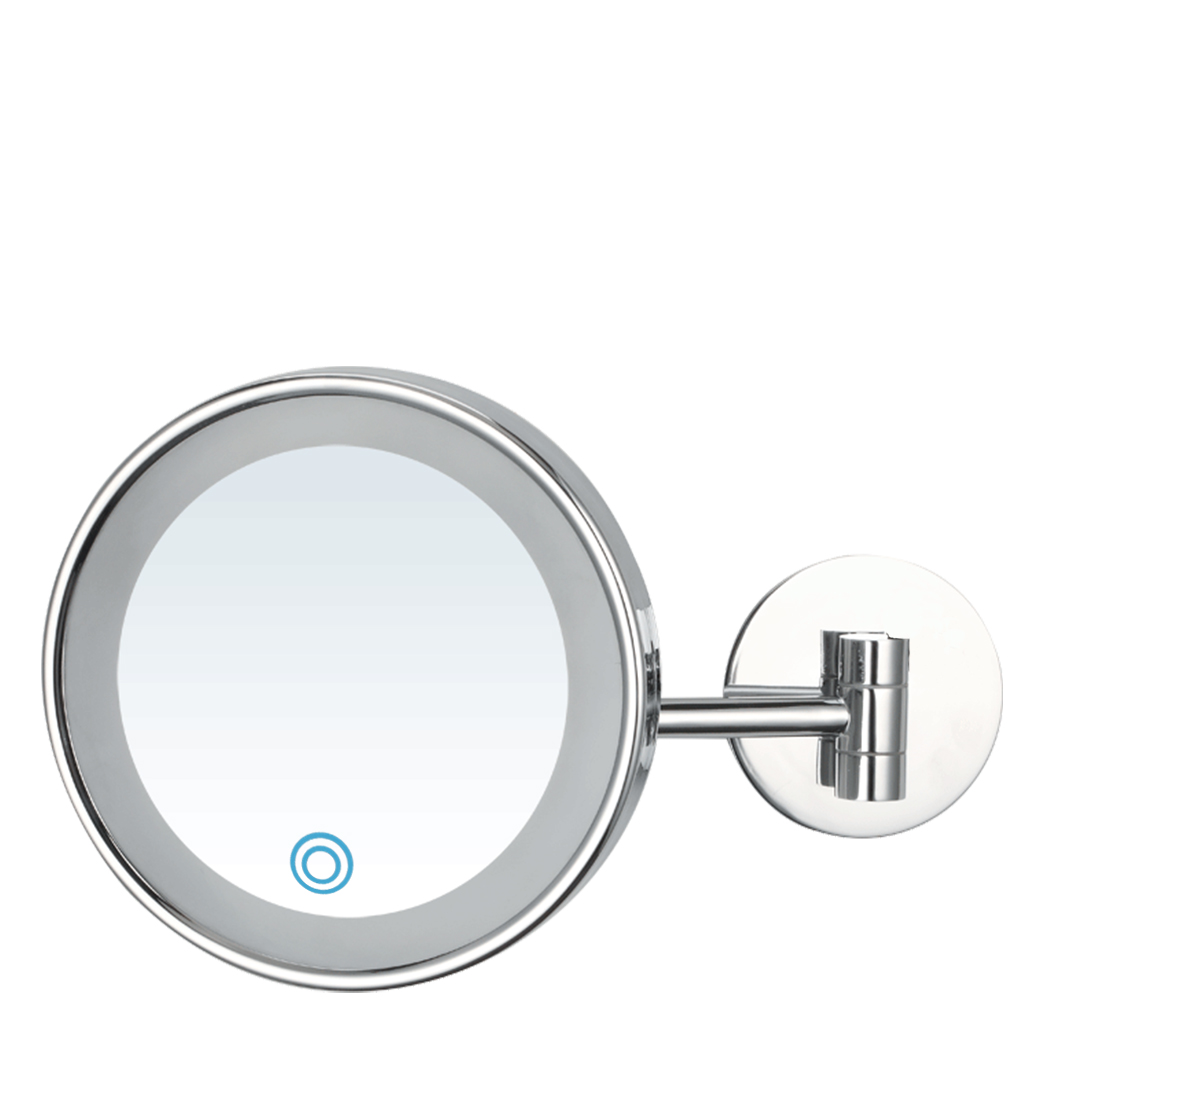 Single Arm White LED 3X Round Wall Mounted Mirror
